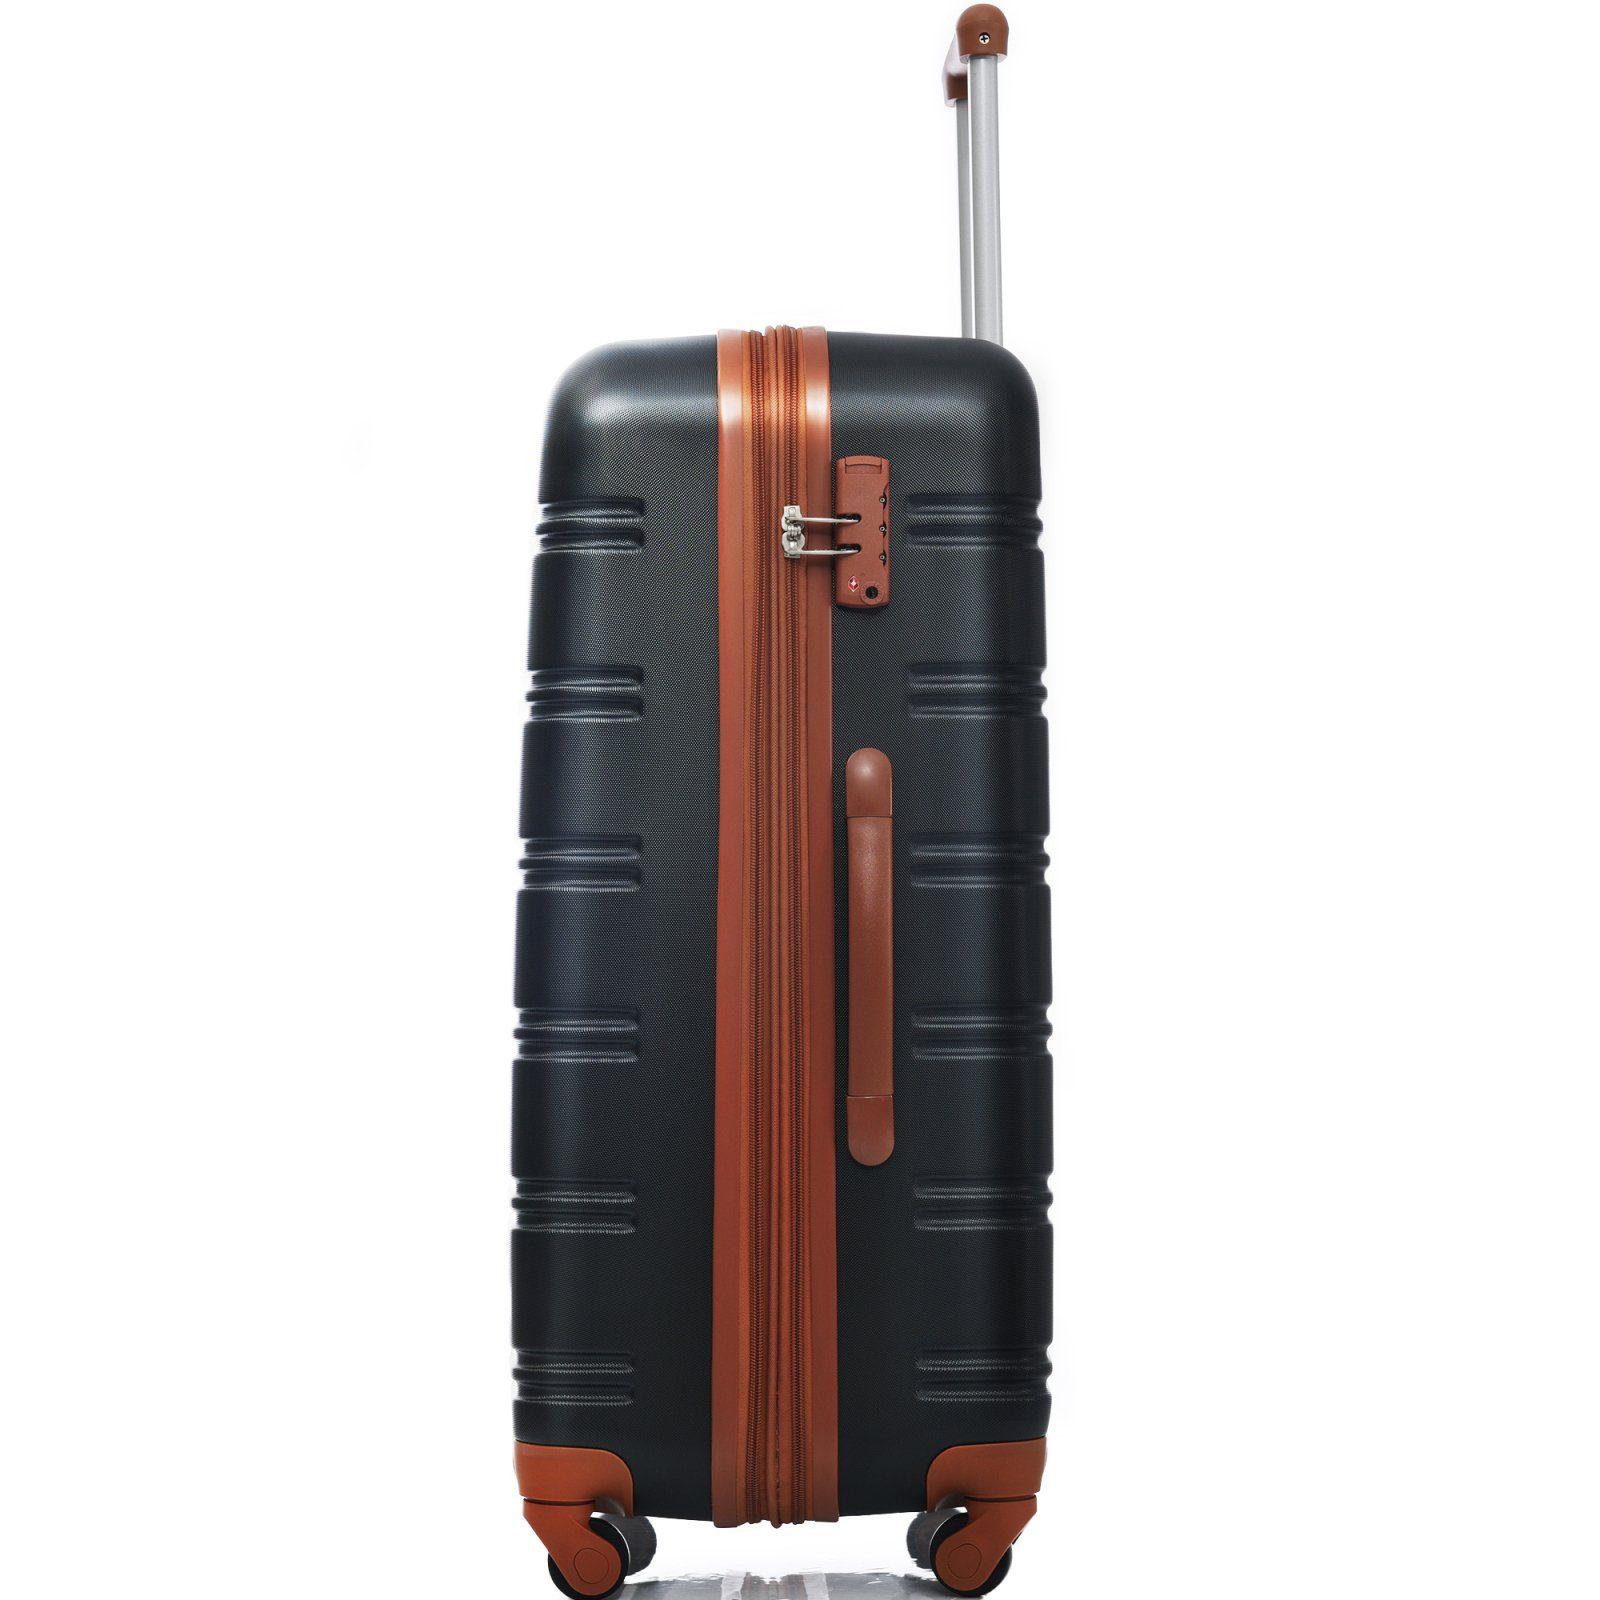 Koffer Rollkoffer 4 , schwarz+braun ABS-Material, Rollkoffer Handgepäck mit 65x44.5x27.5cm aus SEEZSSA Rolle